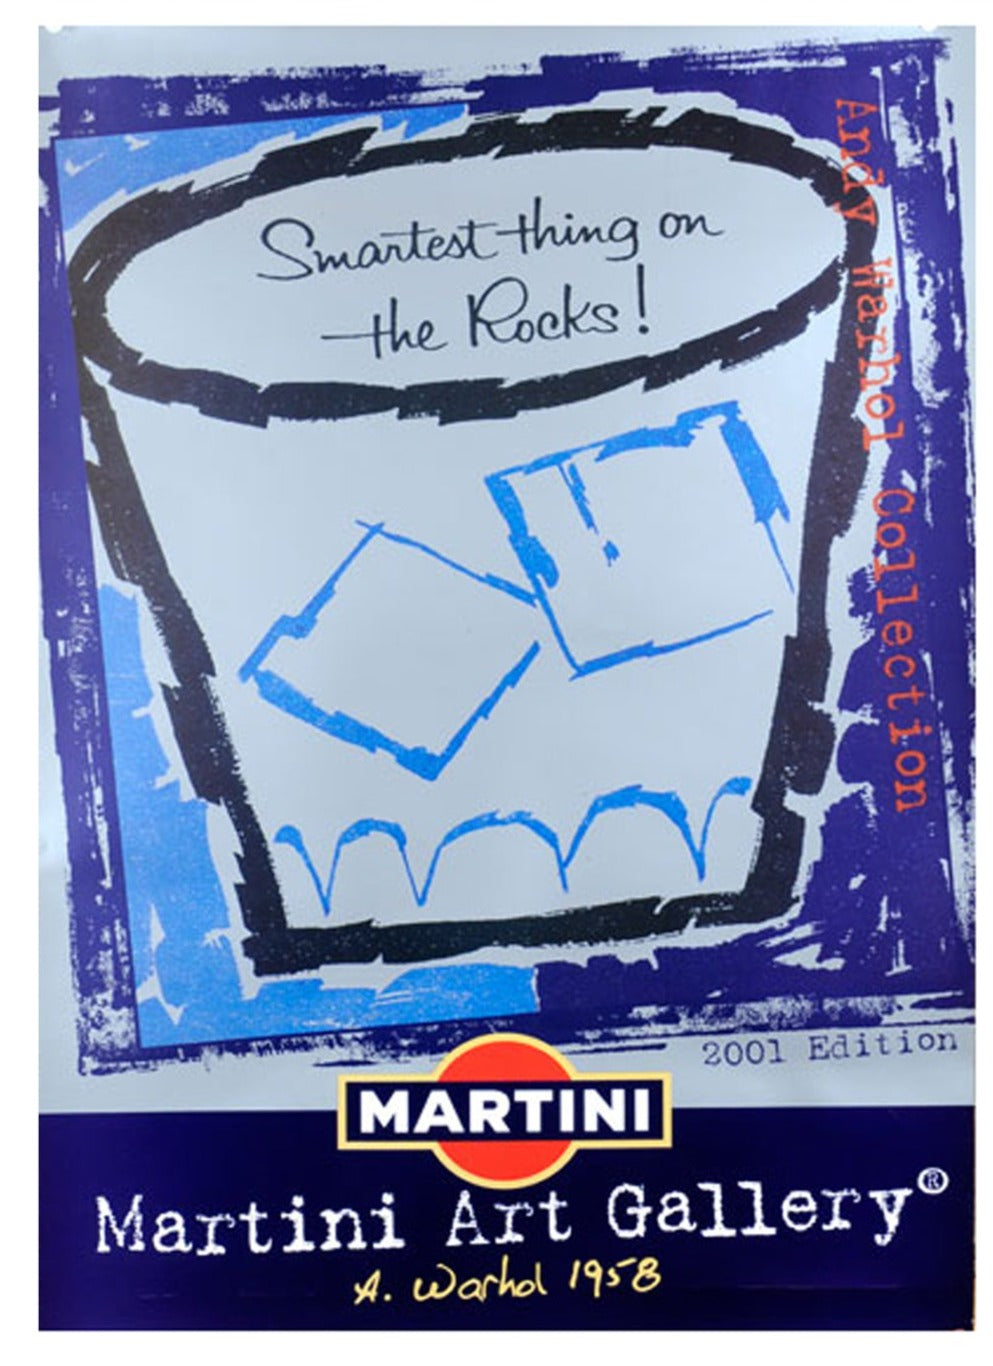 Martini - Andy Warhol